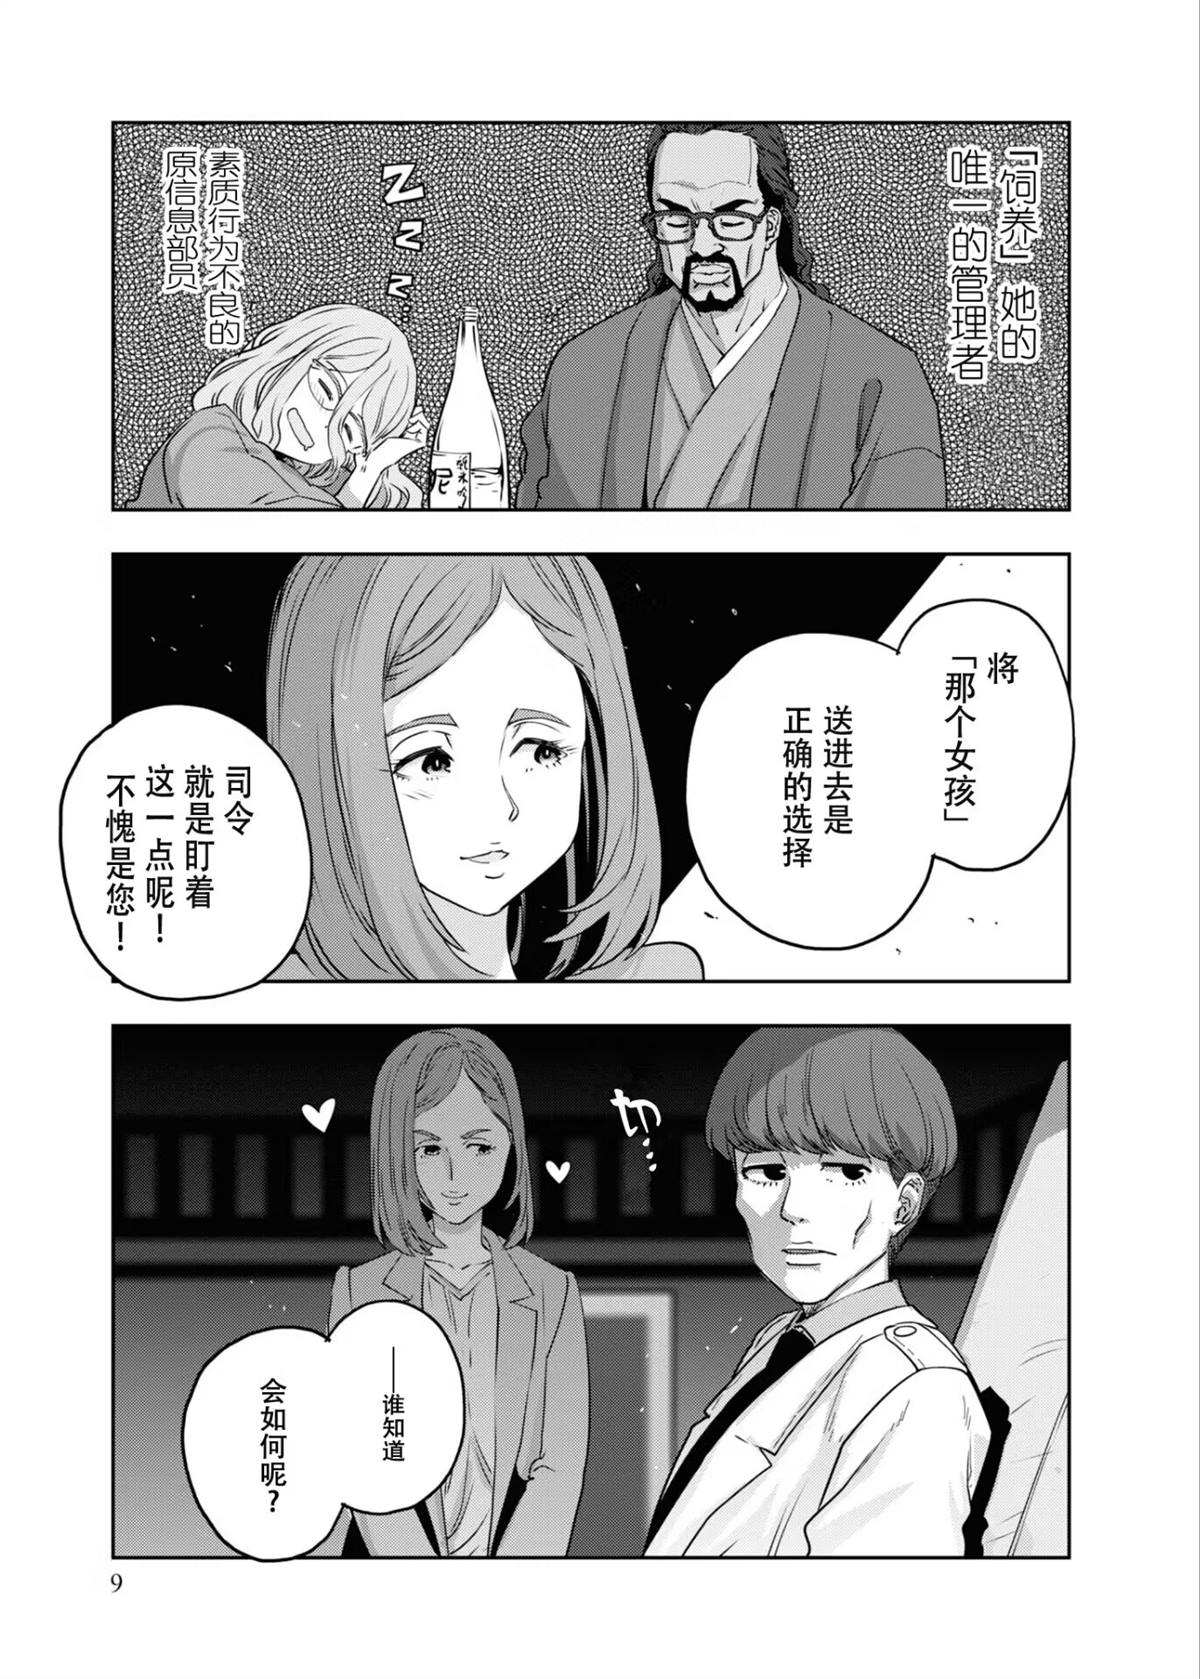 莉可麗絲官方漫畫集REACT - 第1話 - 2